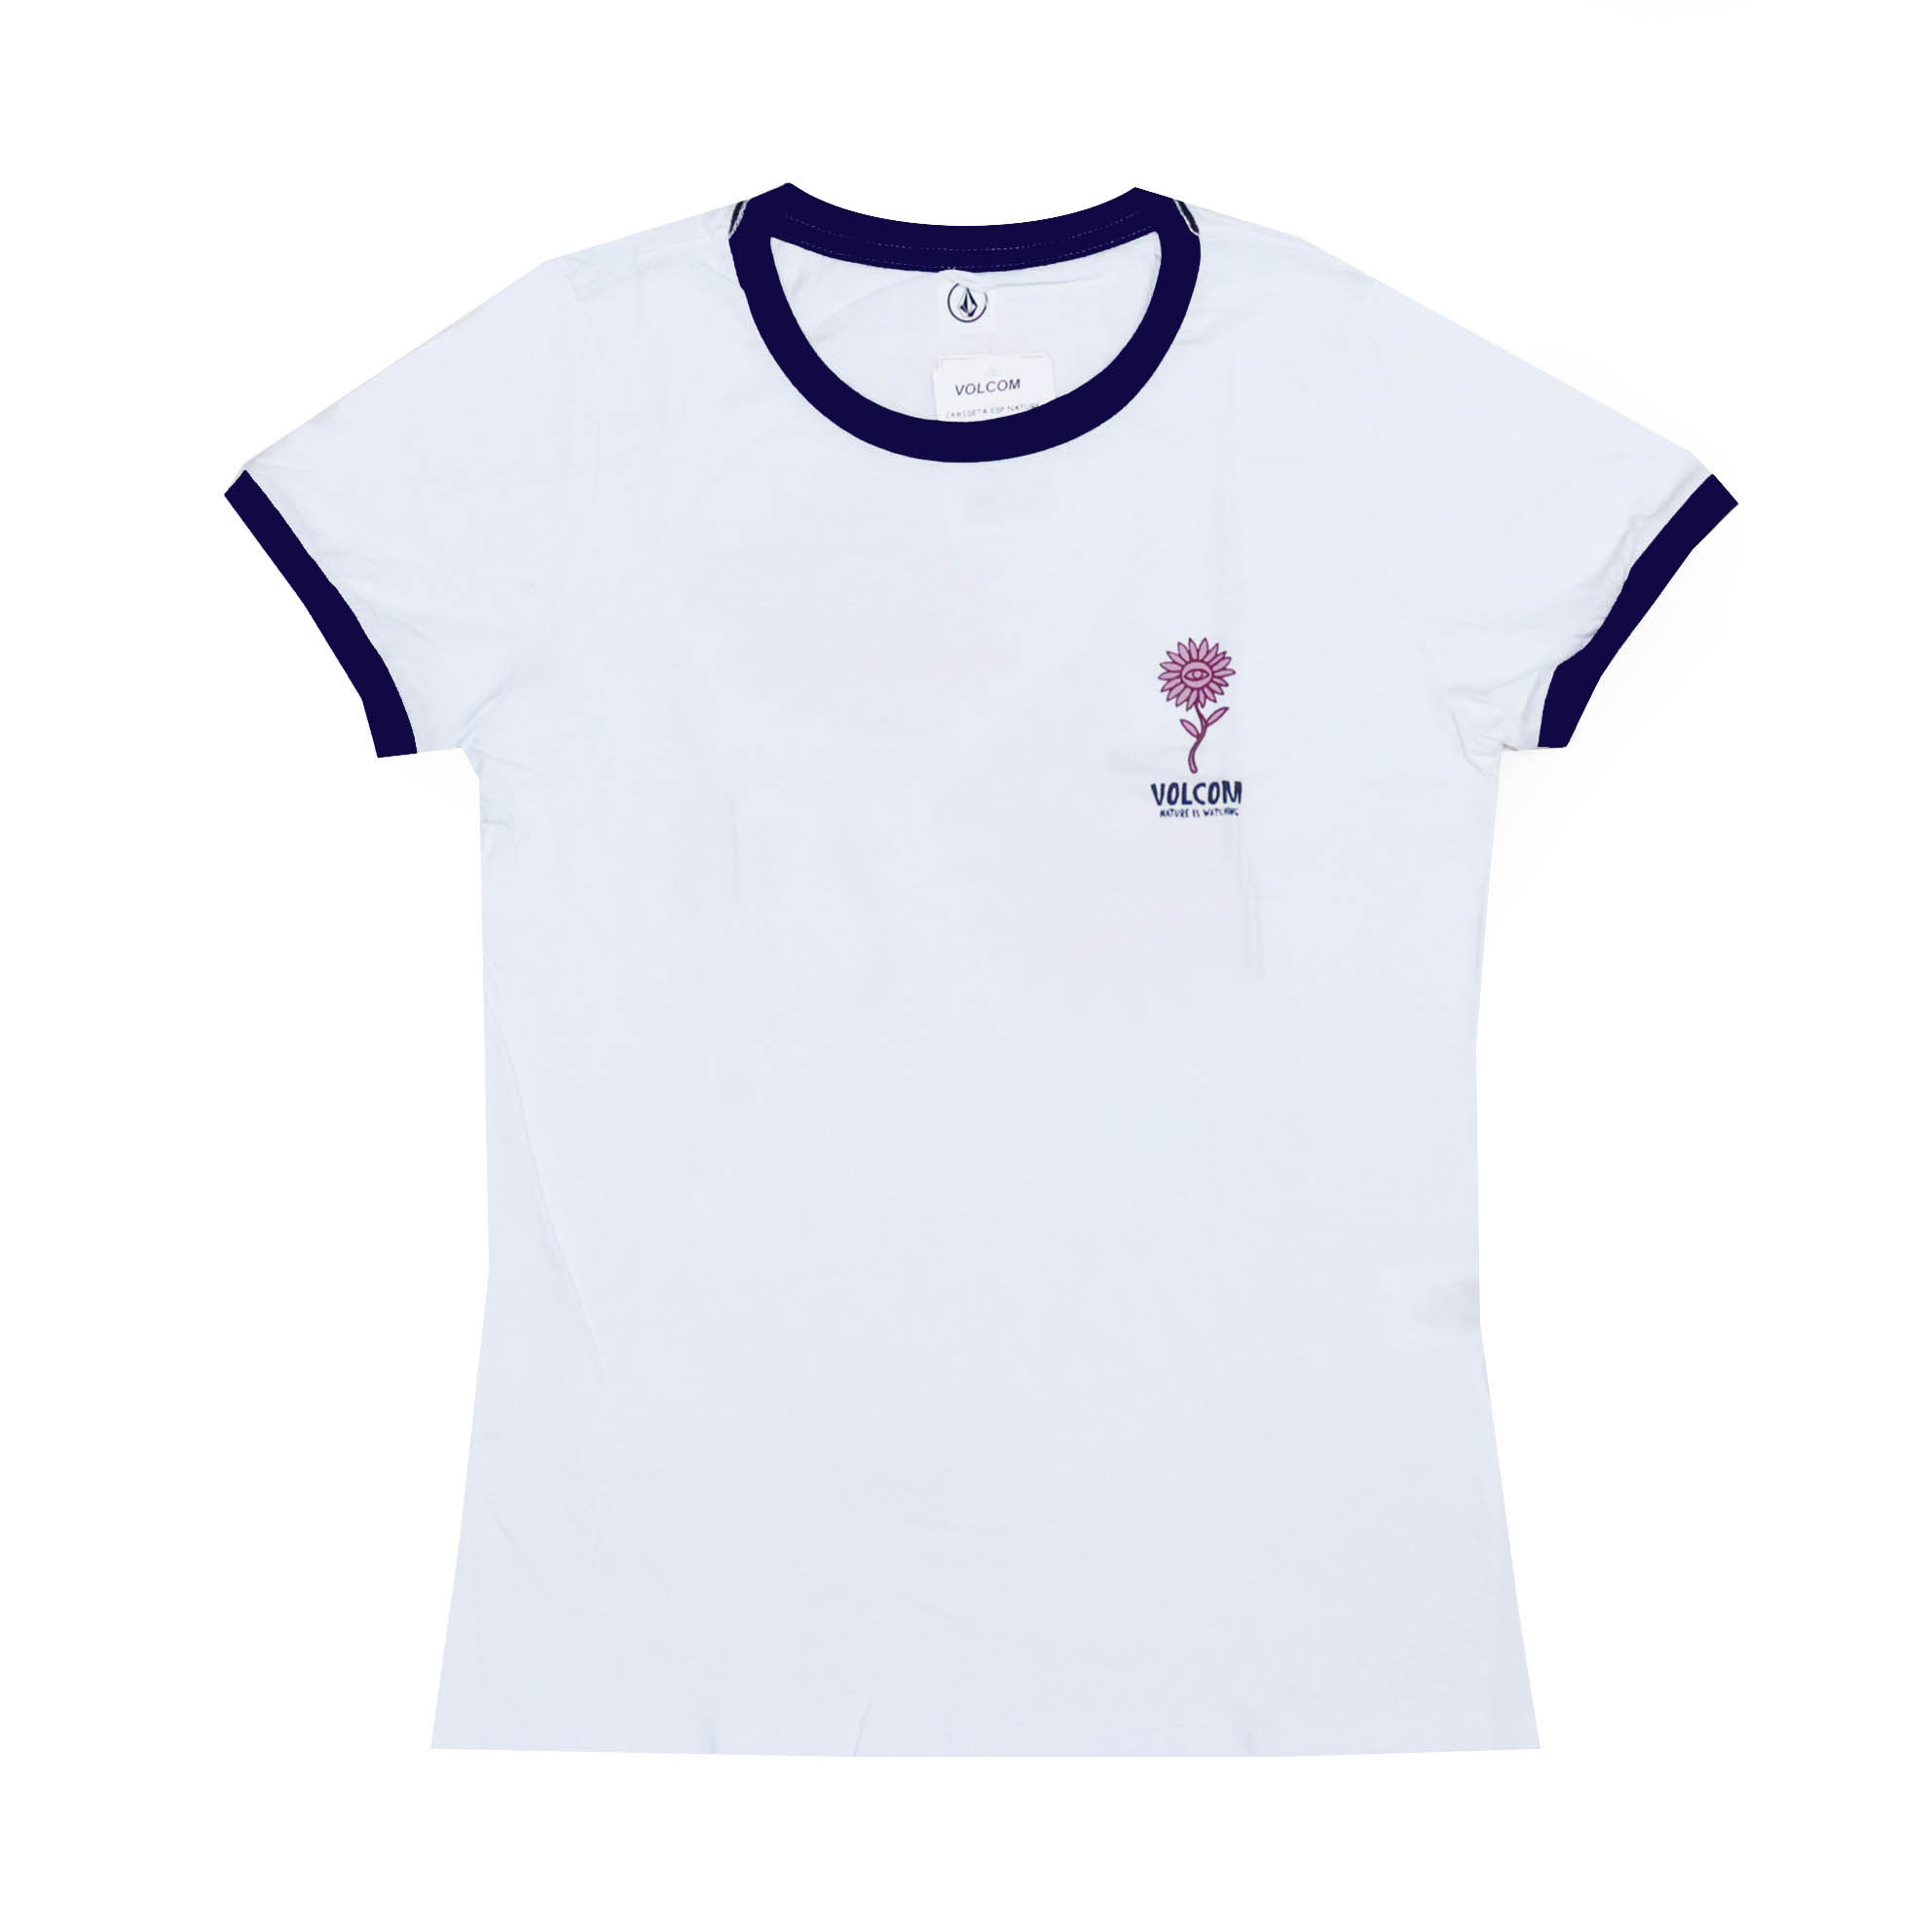 Camiseta Volcom Feminina Especial Nature - Branco/Marinho